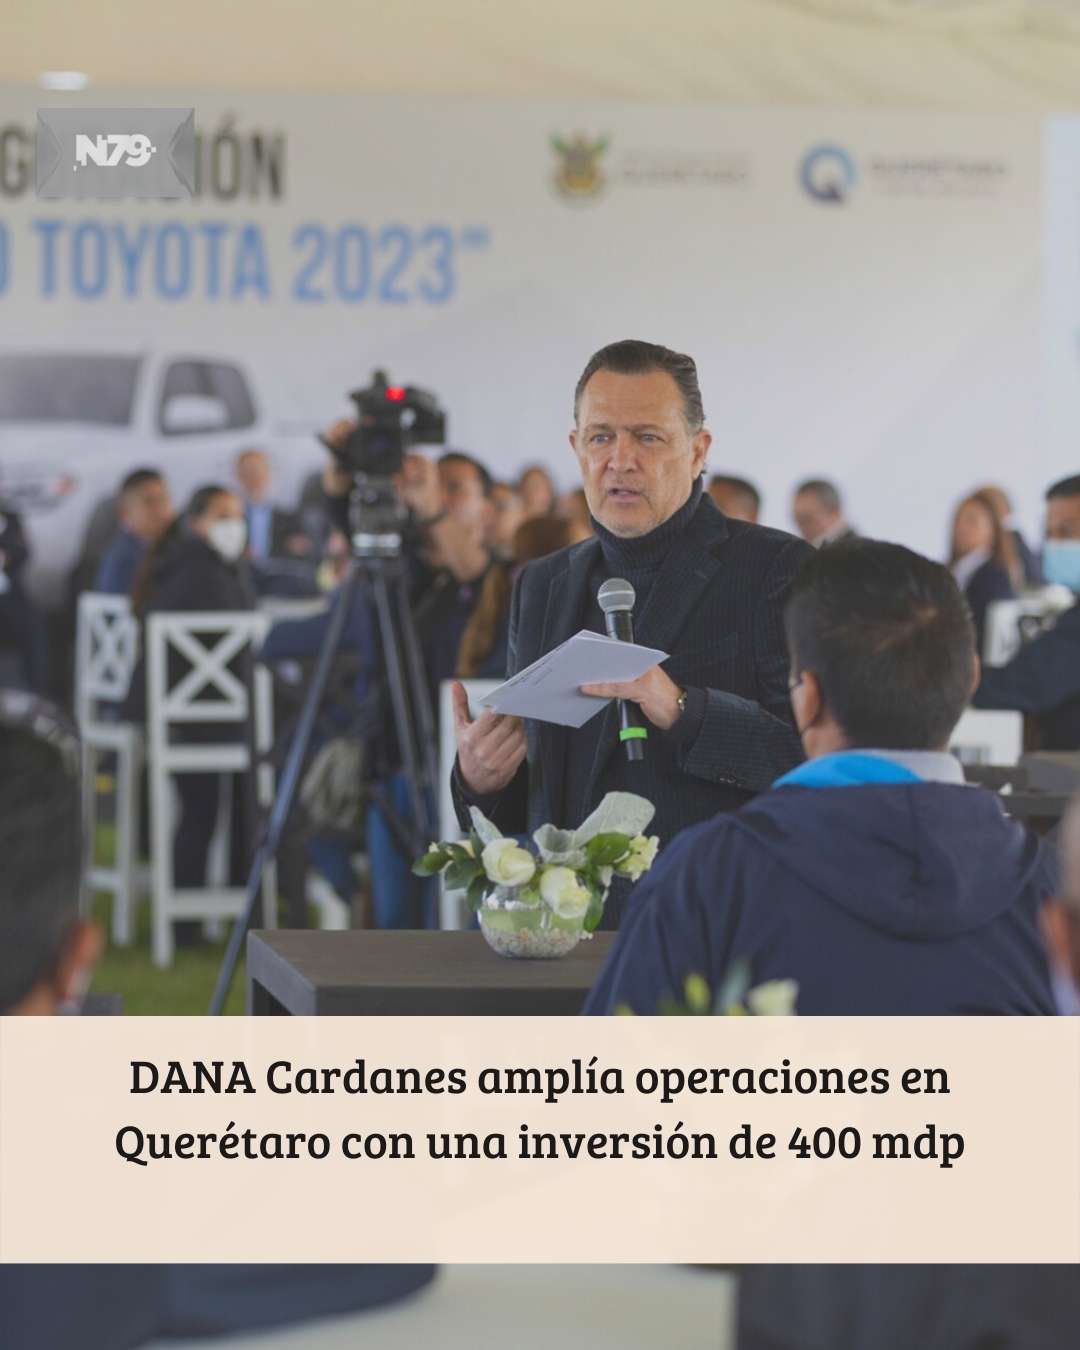 DANA Cardanes amplía operaciones en Querétaro con una inversión de 400 mdp